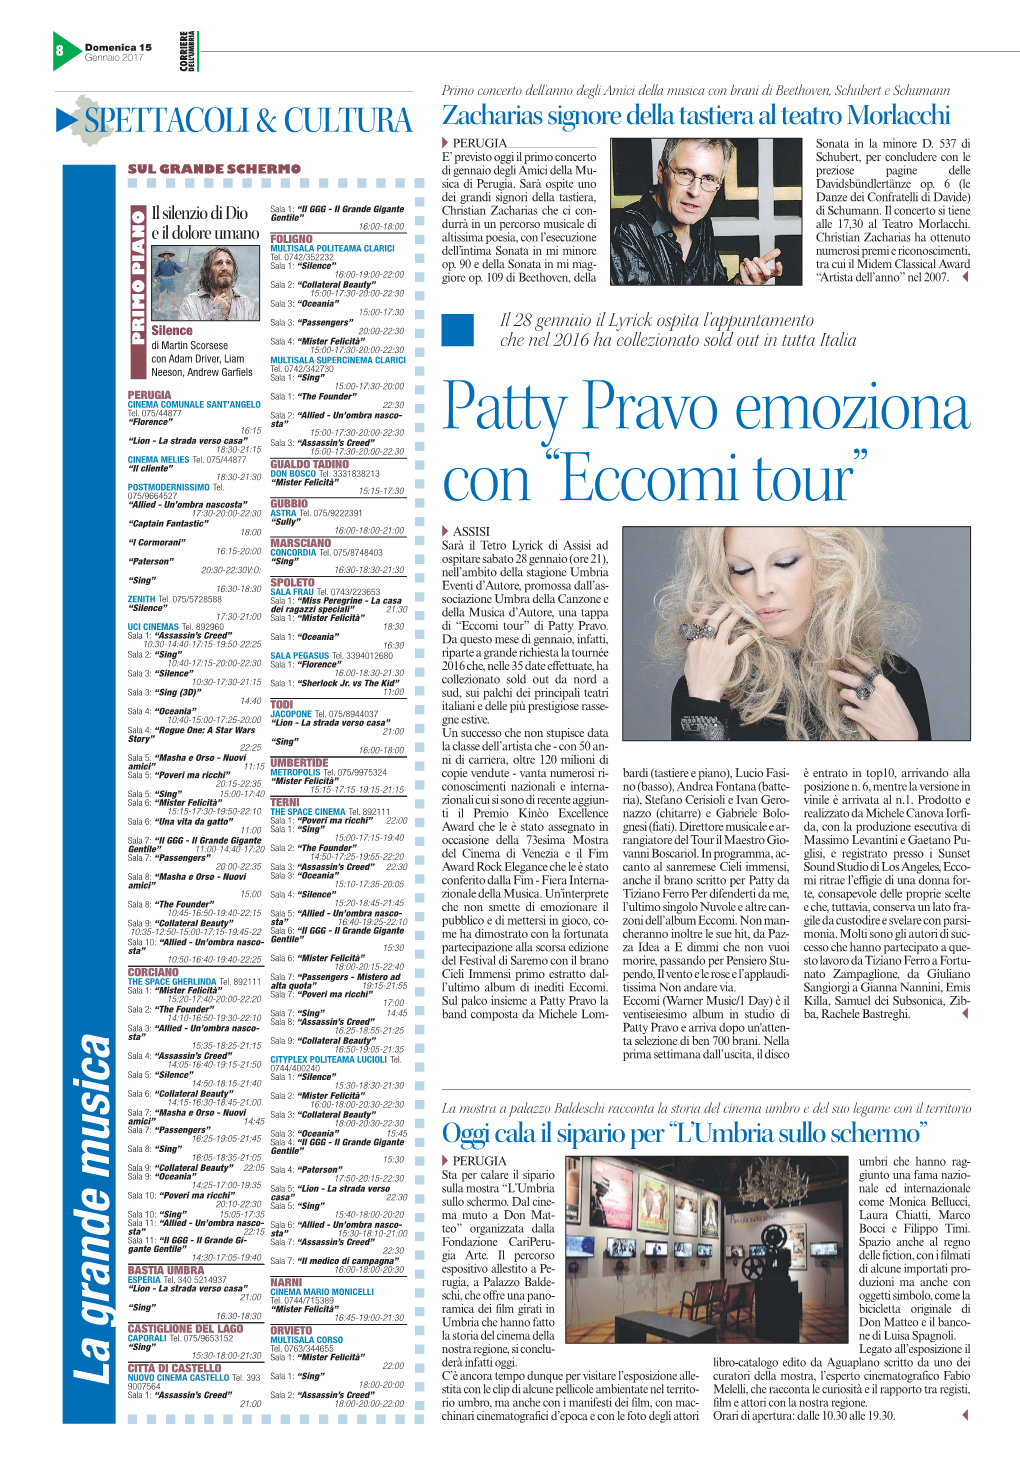 Patty Pravo Emoziona Con “Eccomi Tour”